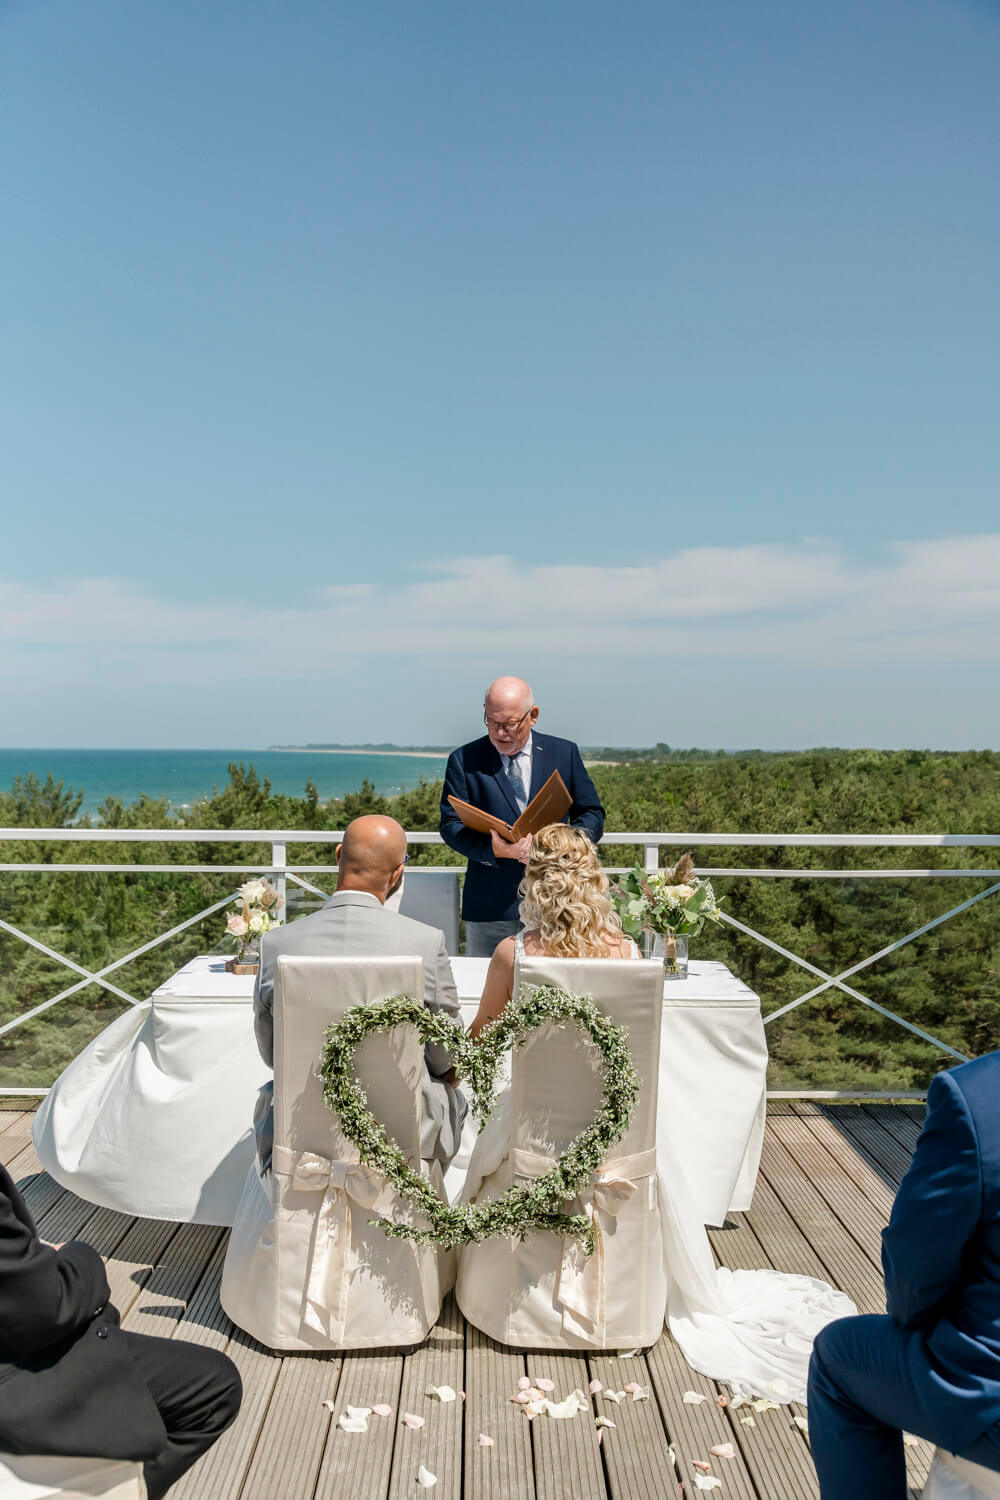 Beeindruckender Ausblick auf die Weite der Ostsee während der Eheschließung in Dierhagen. Heiraten in Mecklenburg-Vor